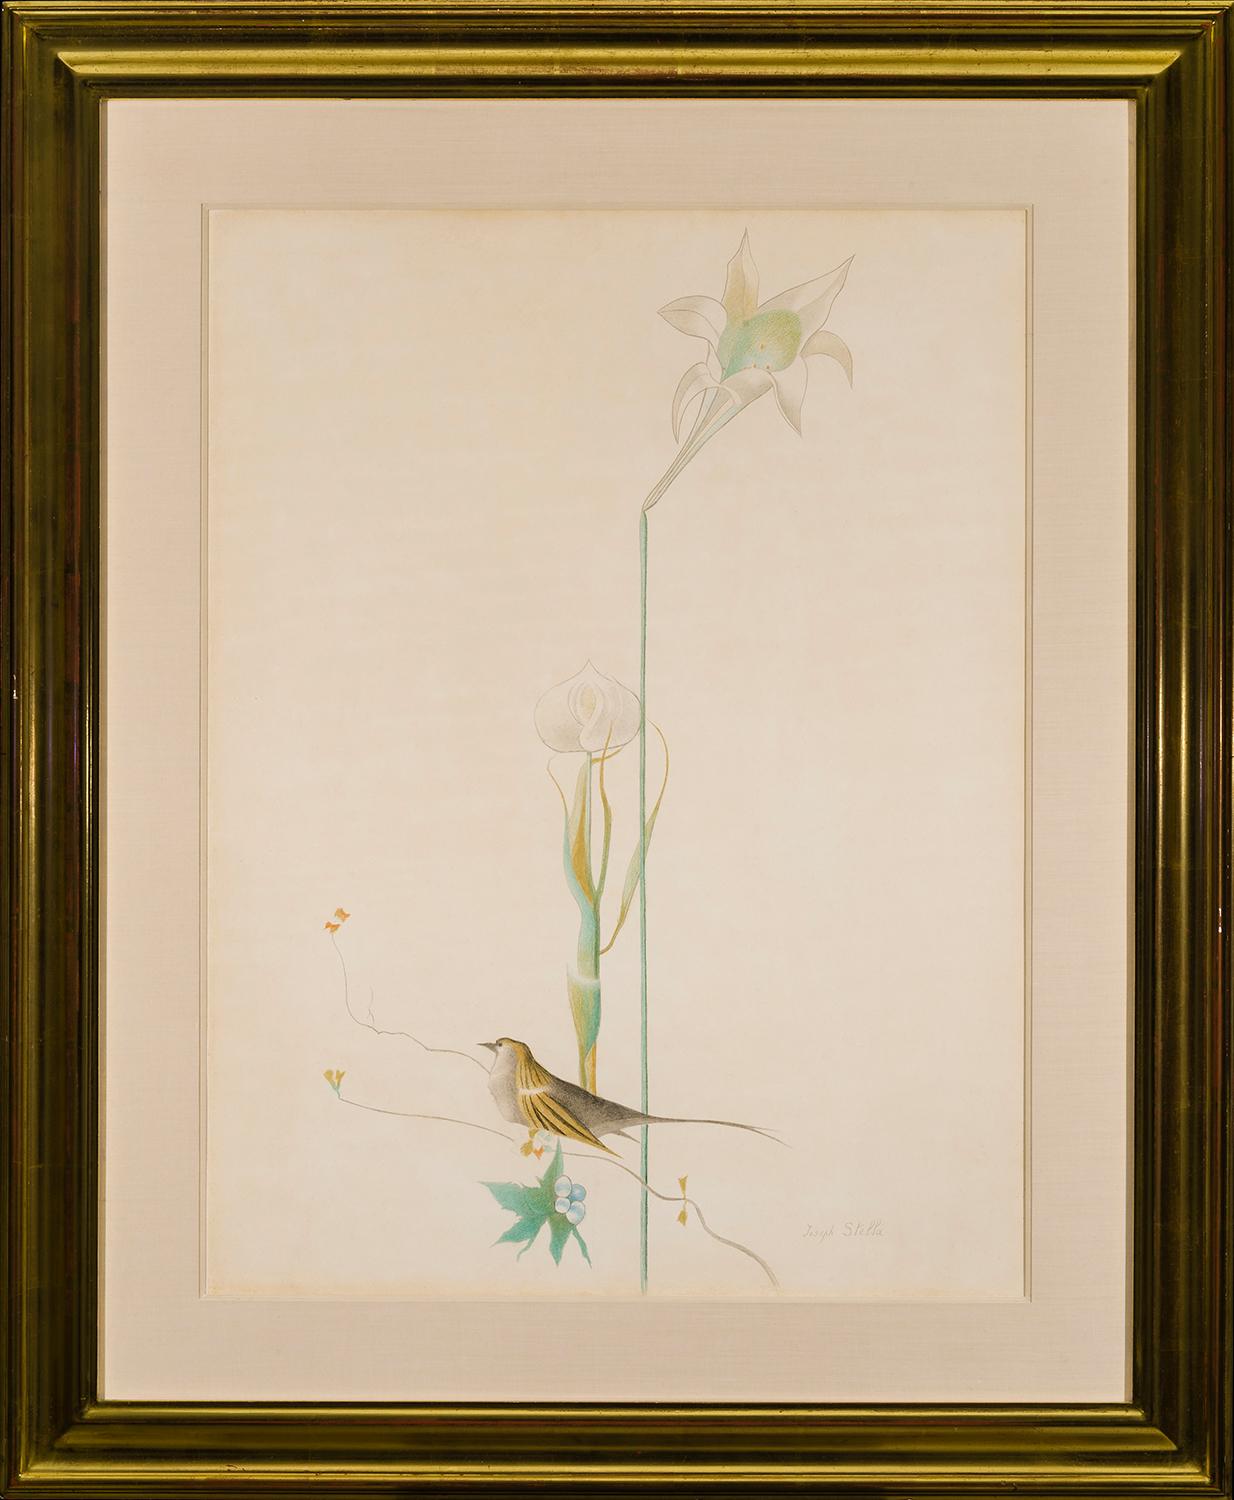 Lily and Bird - Art by Joseph Stella